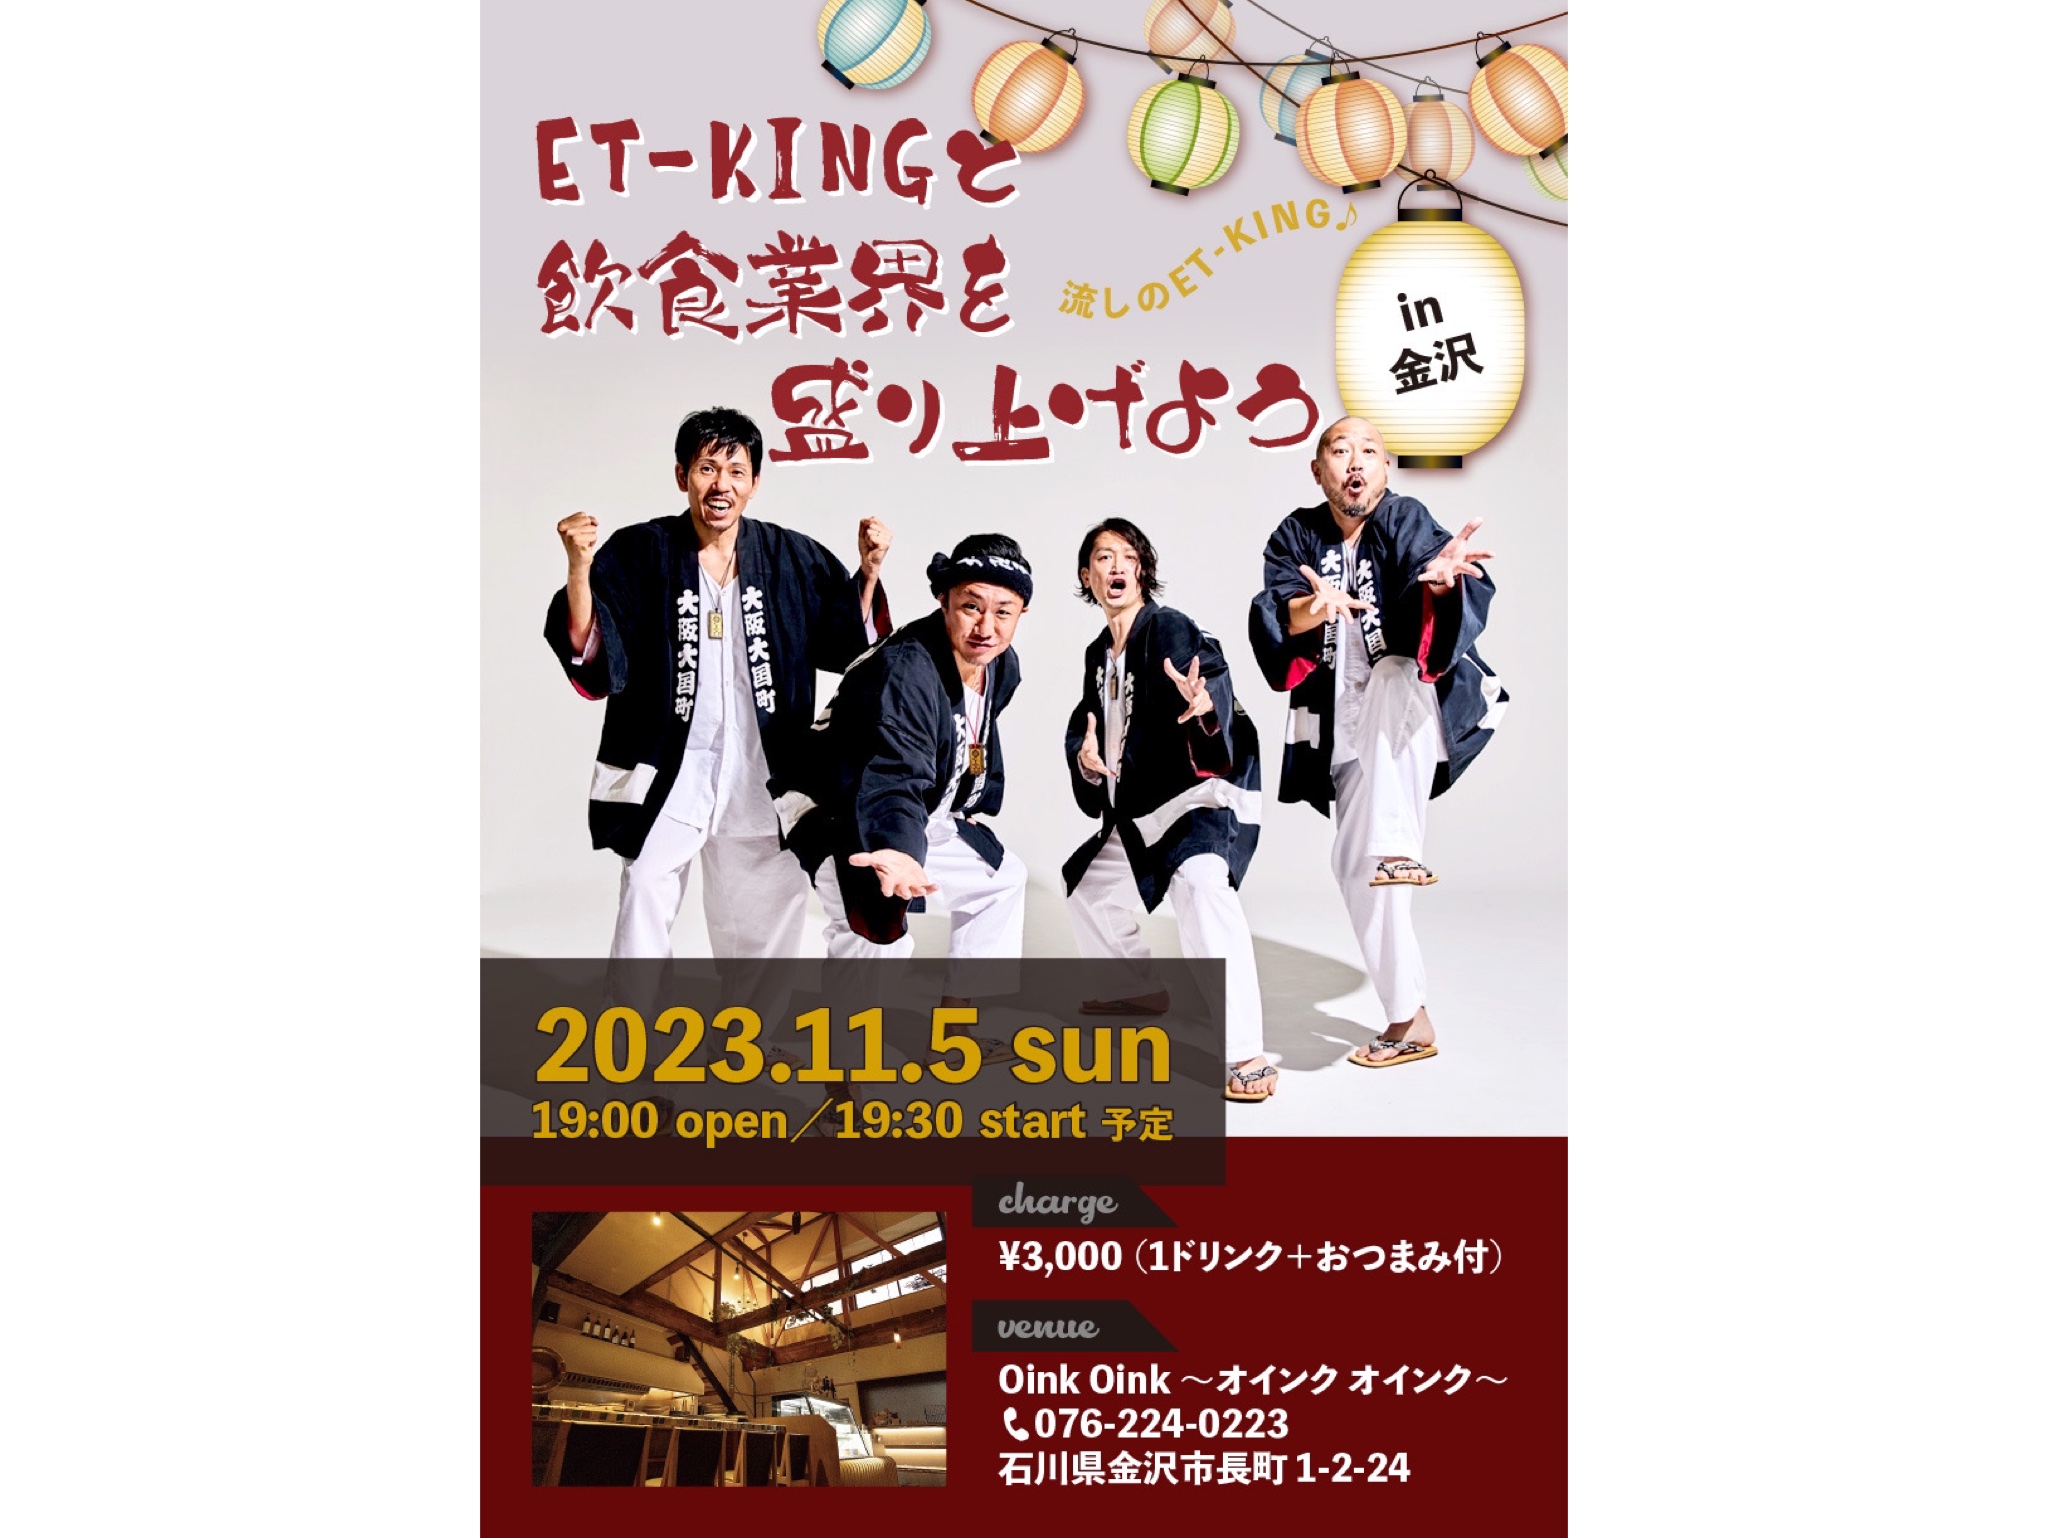 11/5 流しのET-KING in 金沢♪